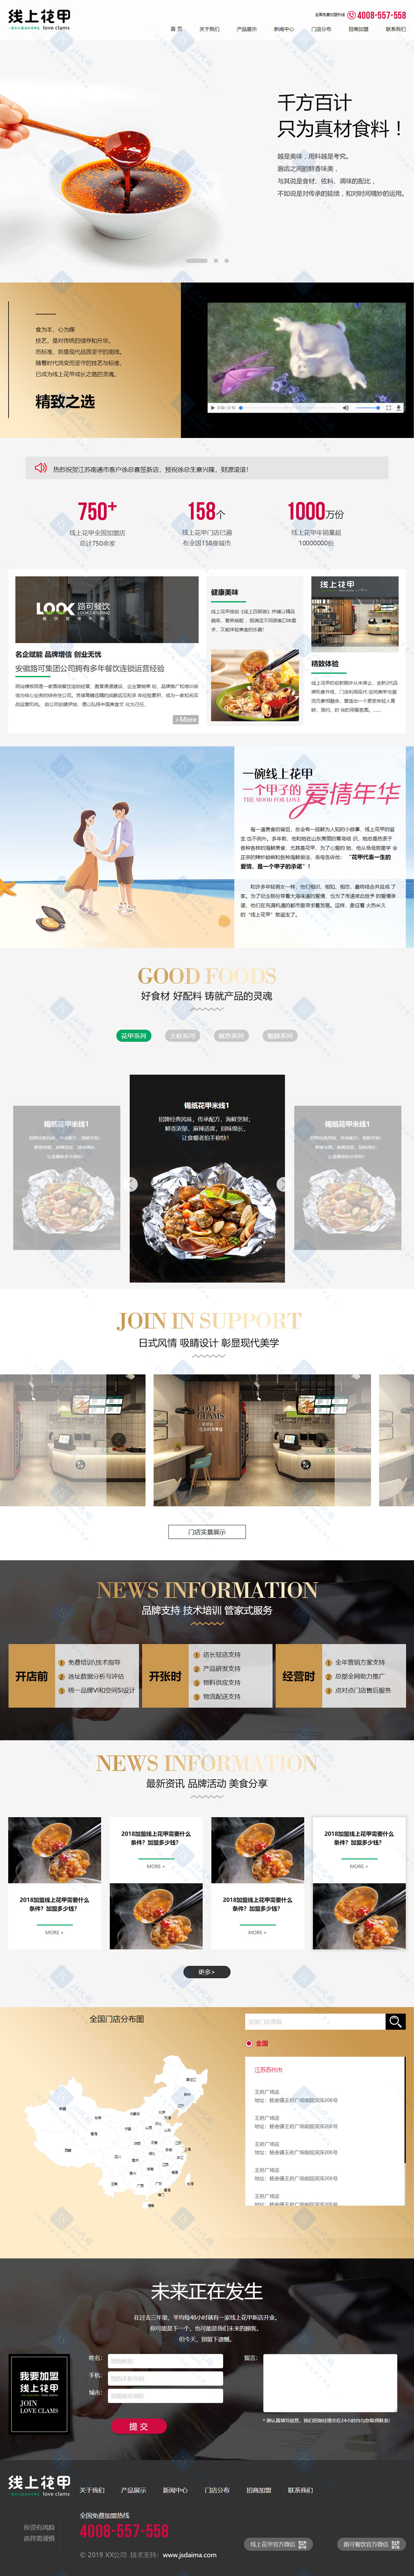 HTML5精美炫酷大气美食小吃餐饮连锁加盟管理公司网站模板